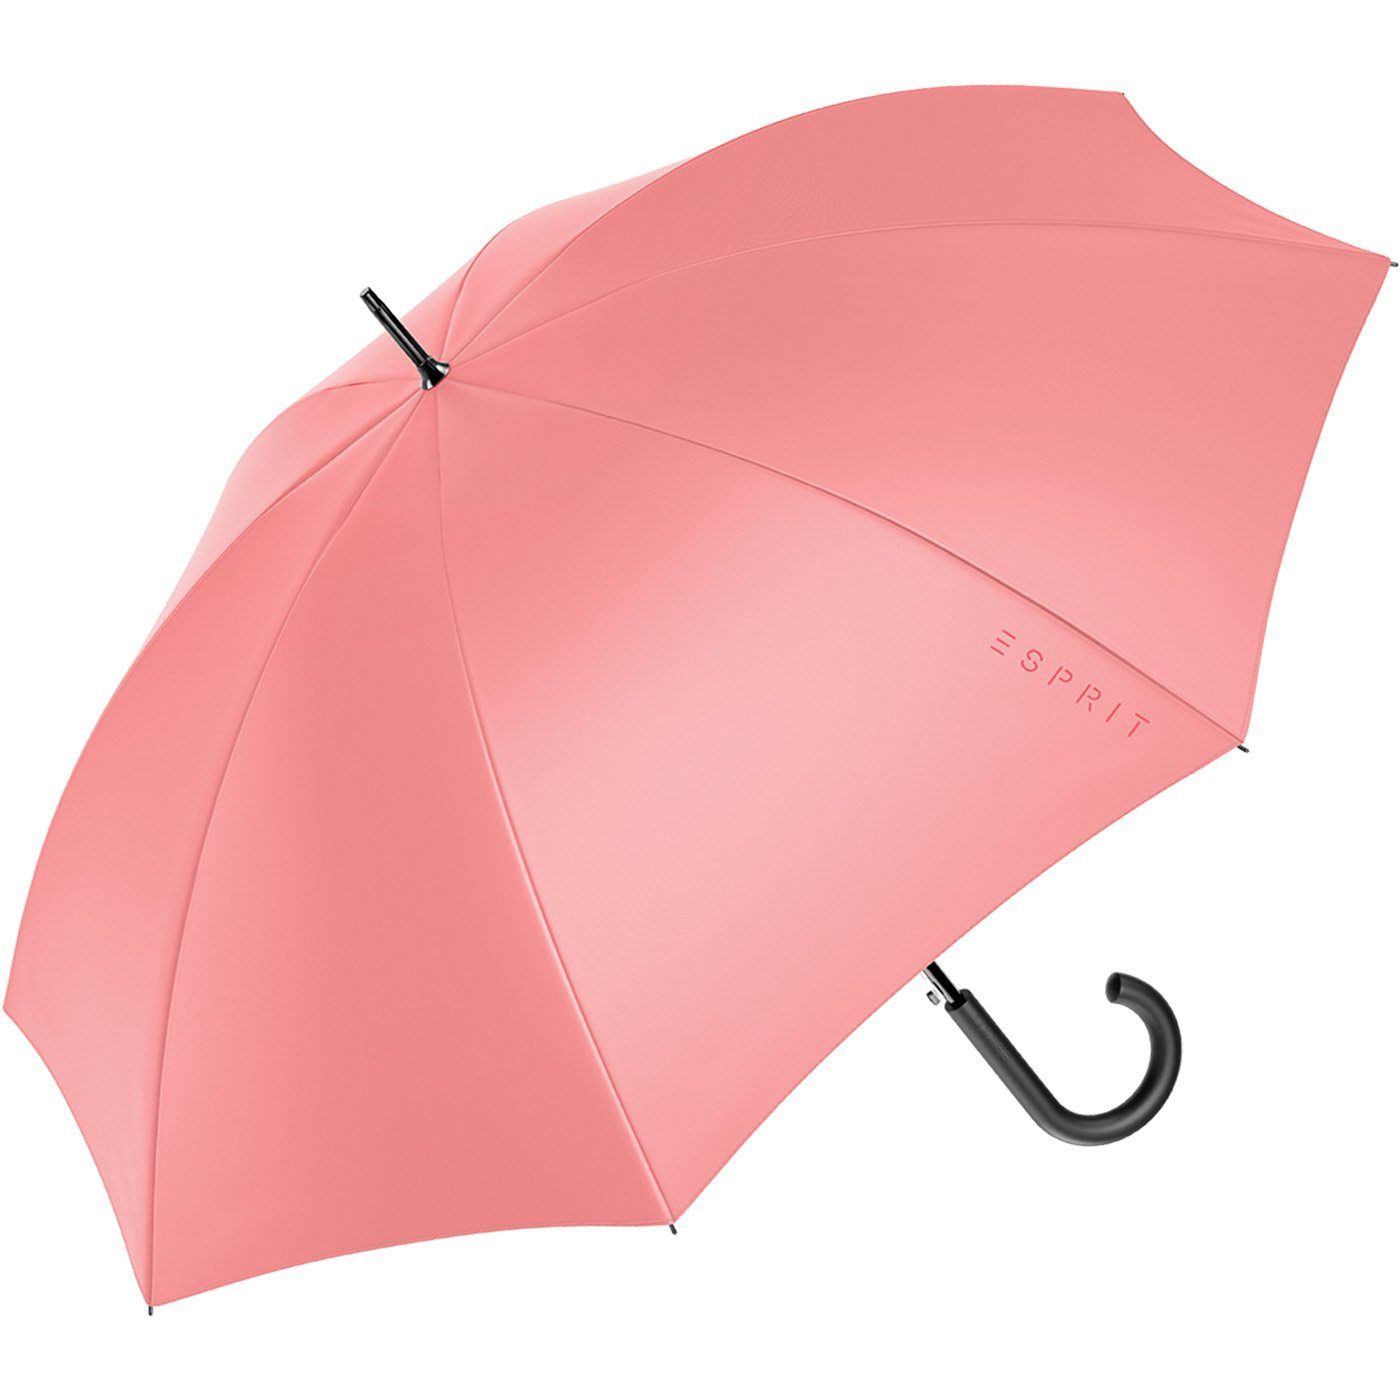 FJ mit Esprit und koralle 2022, Damen-Regenschirm groß den stabil, Automatik Stockregenschirm in Trendfarben